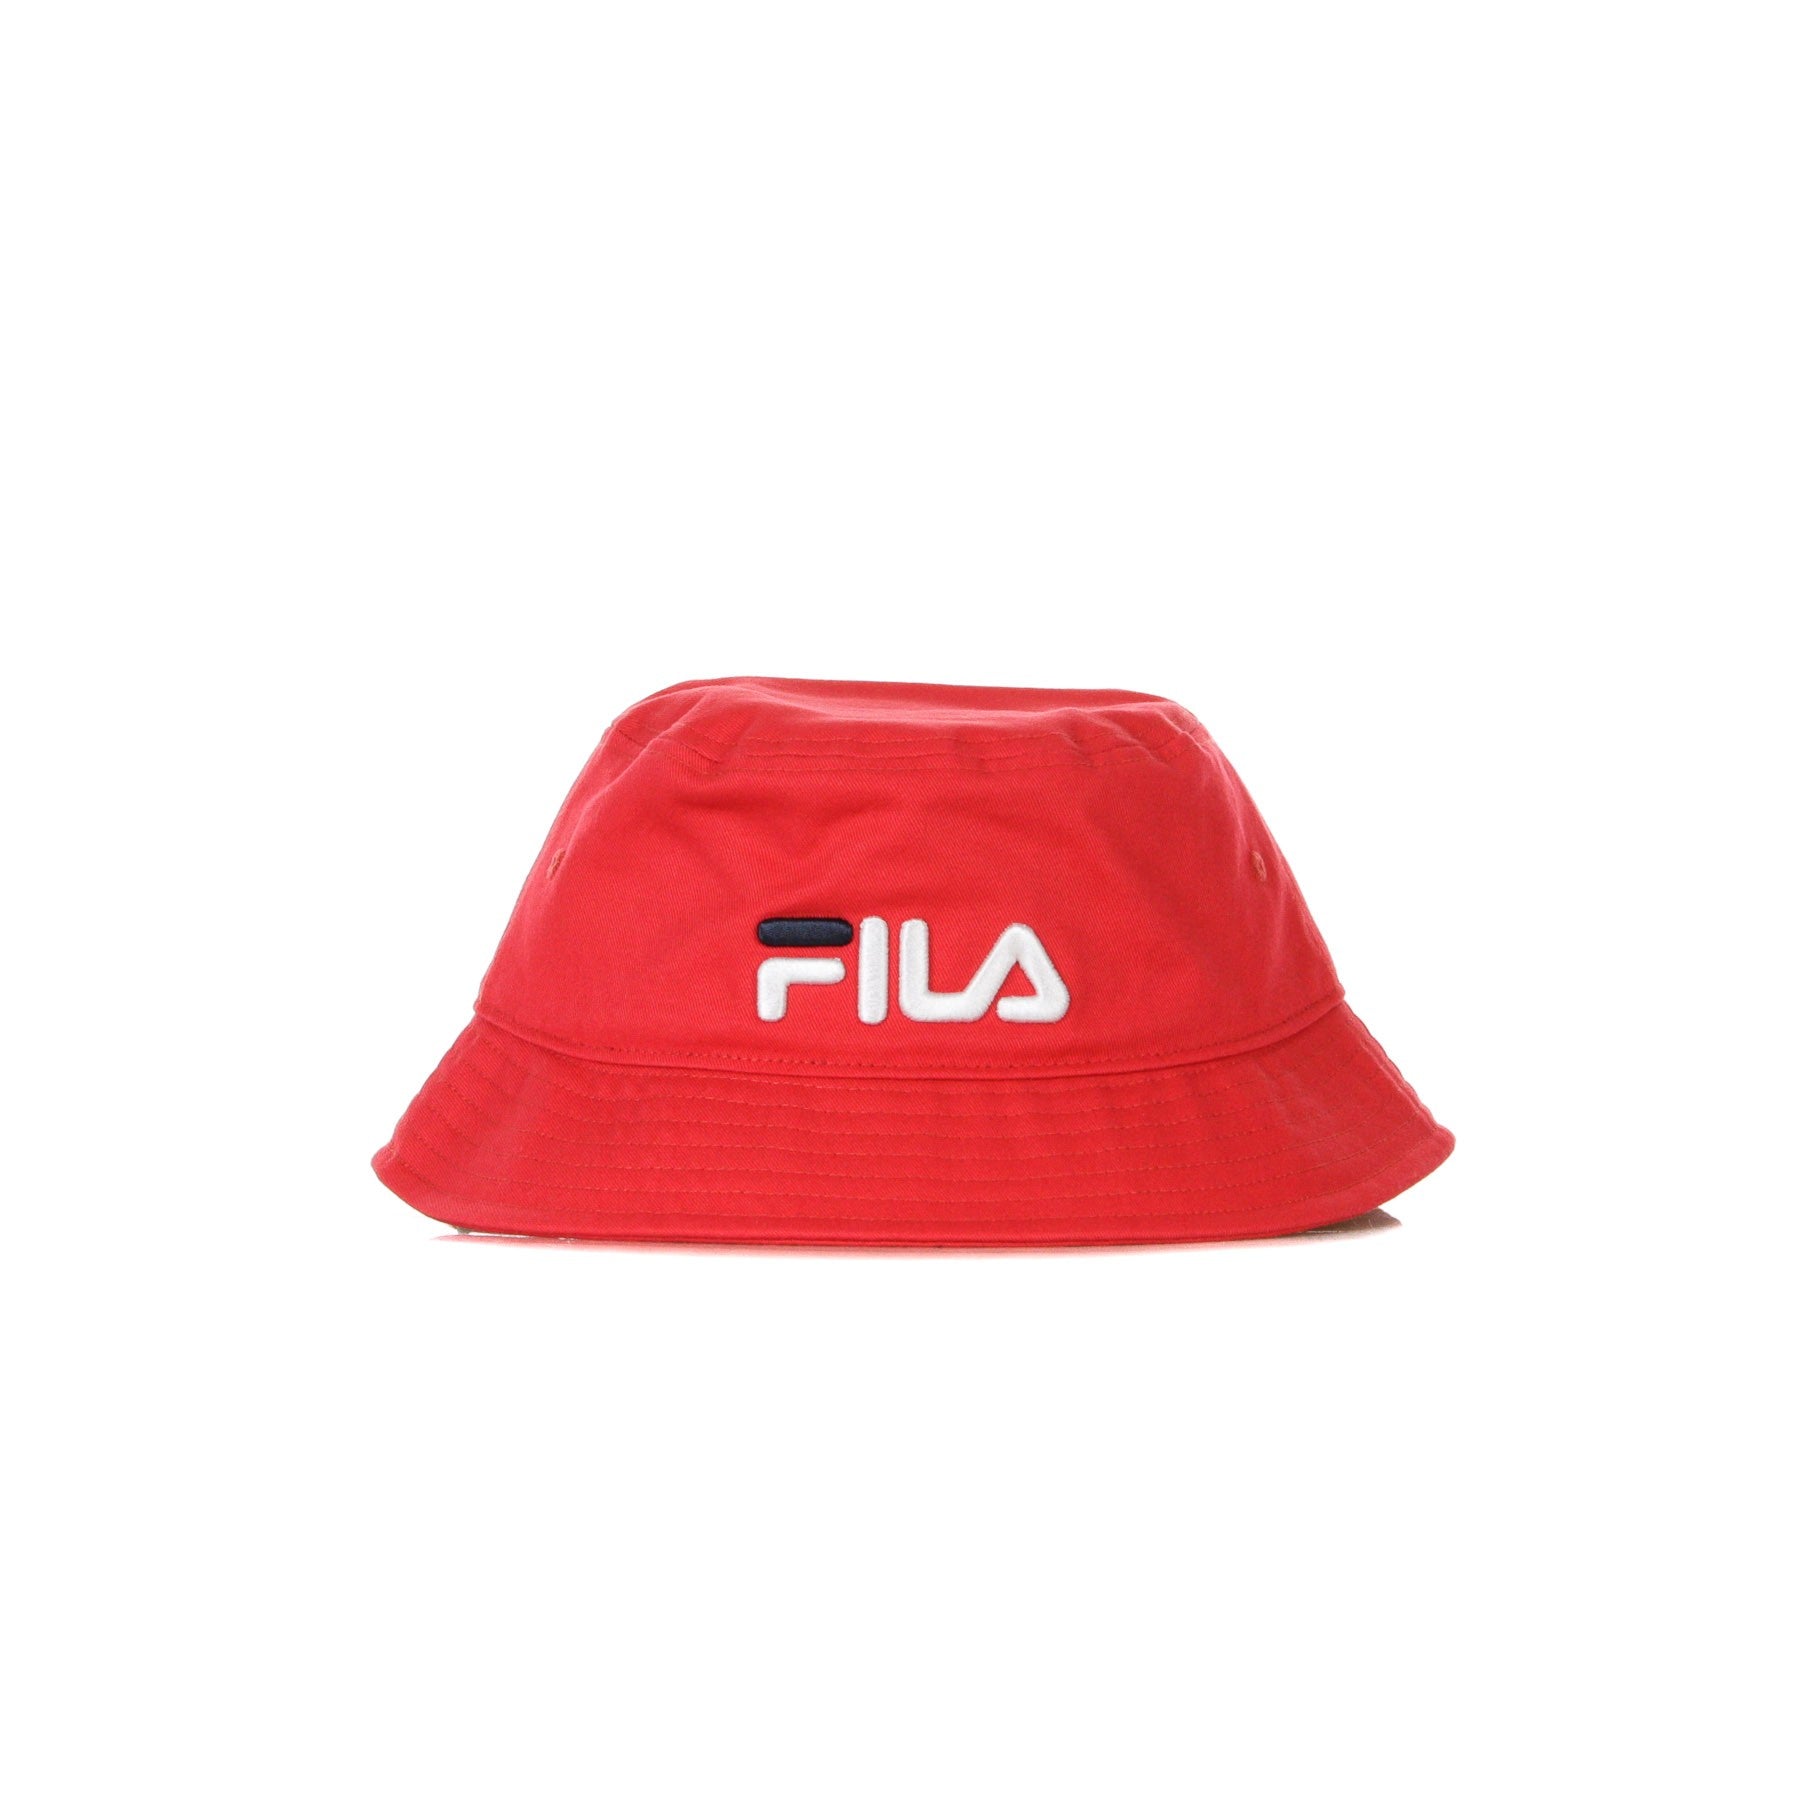 Riku True Red Men's Bucket Hat